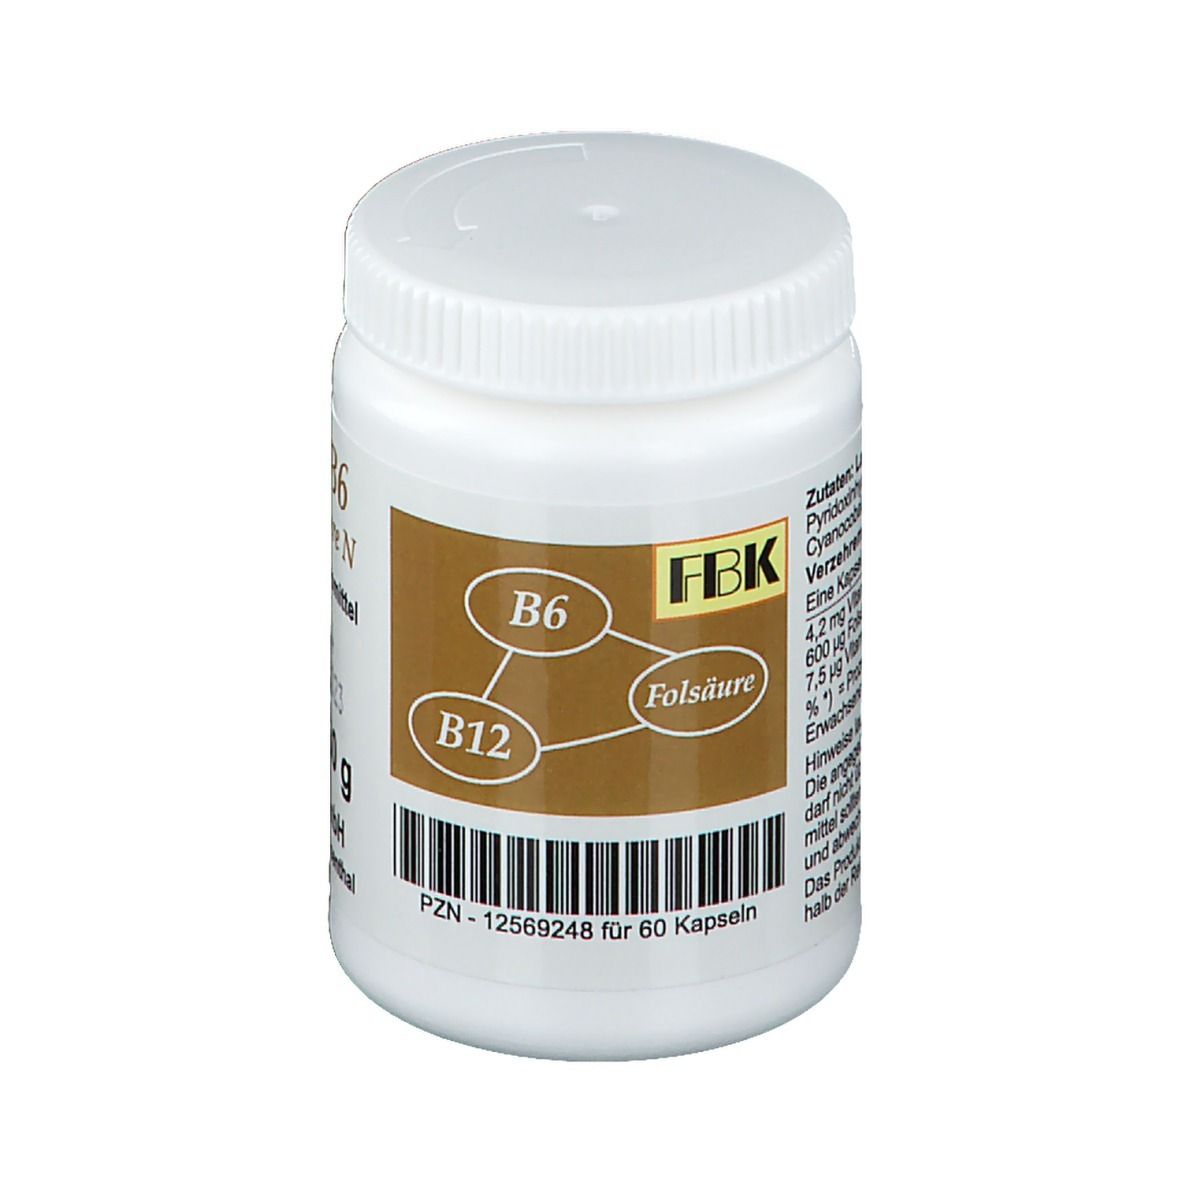 FBK Vitamin B6 + B12 + Folsäure N